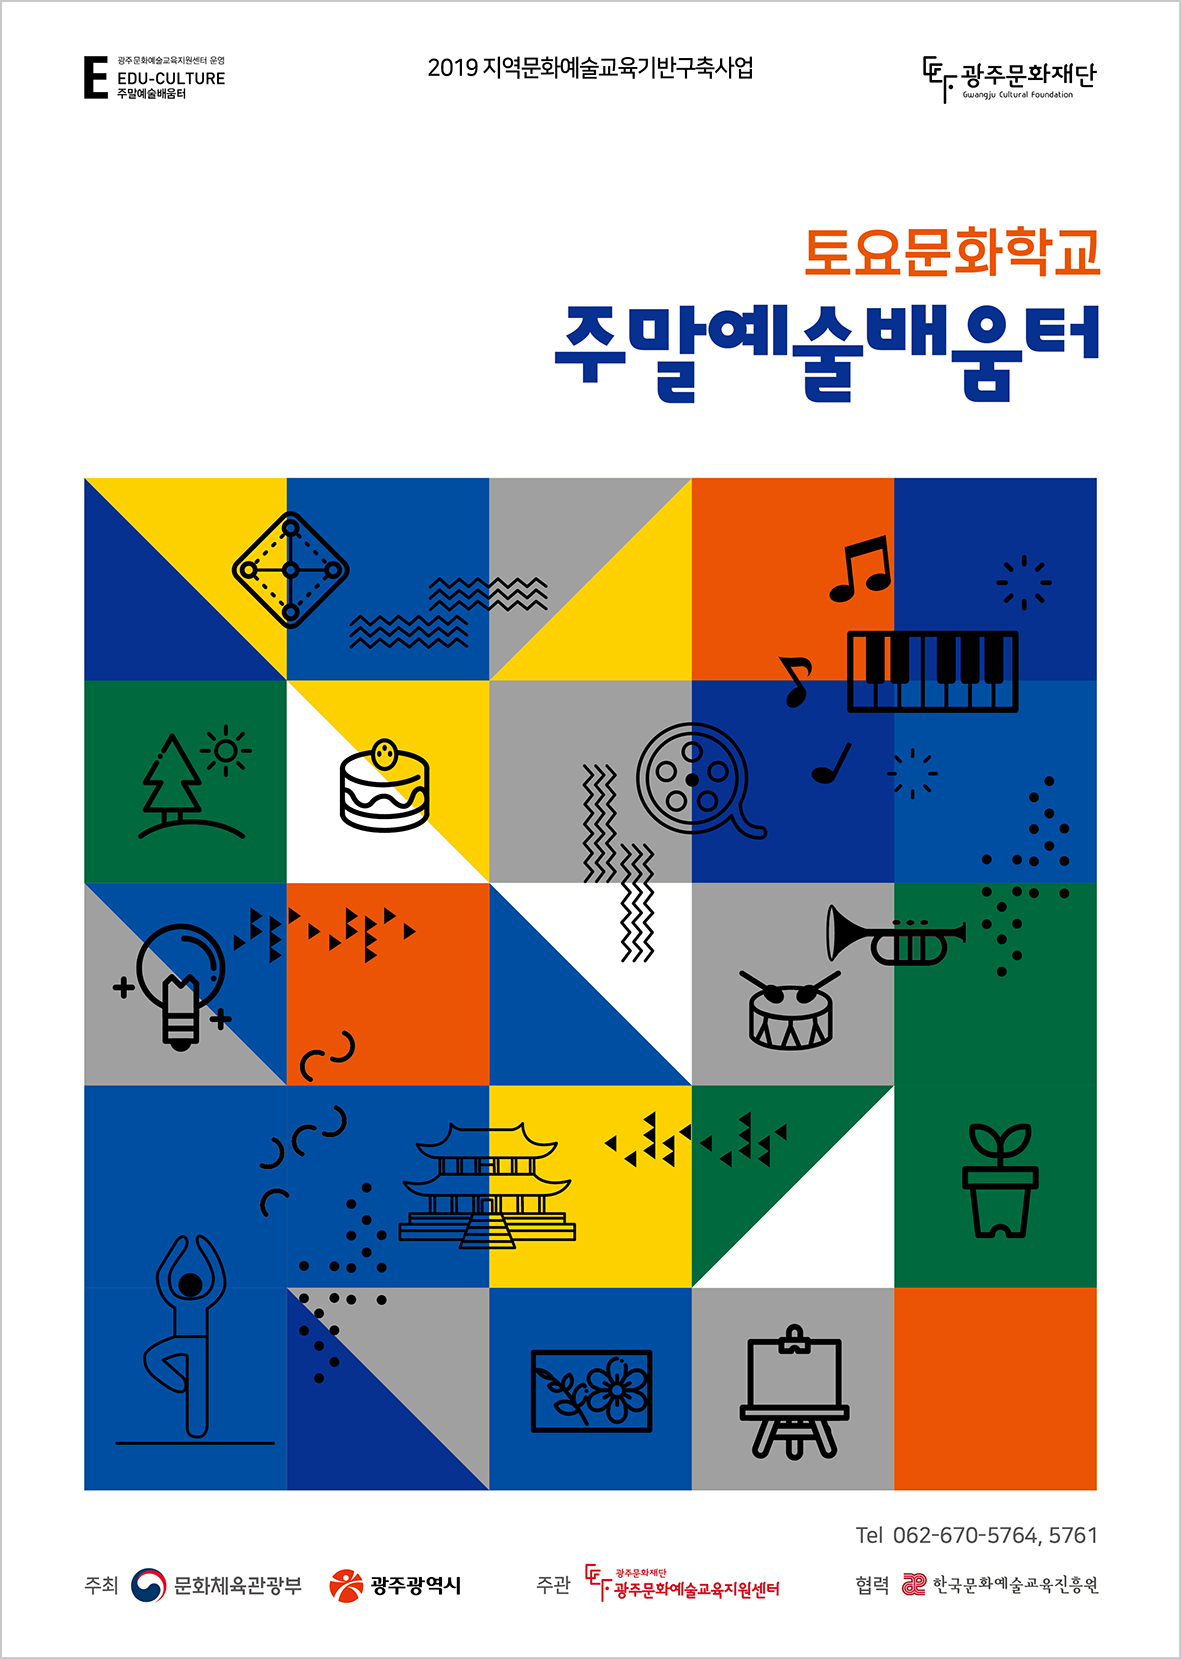 「토요문화학교-주말예술배움터」 포스터.jpg